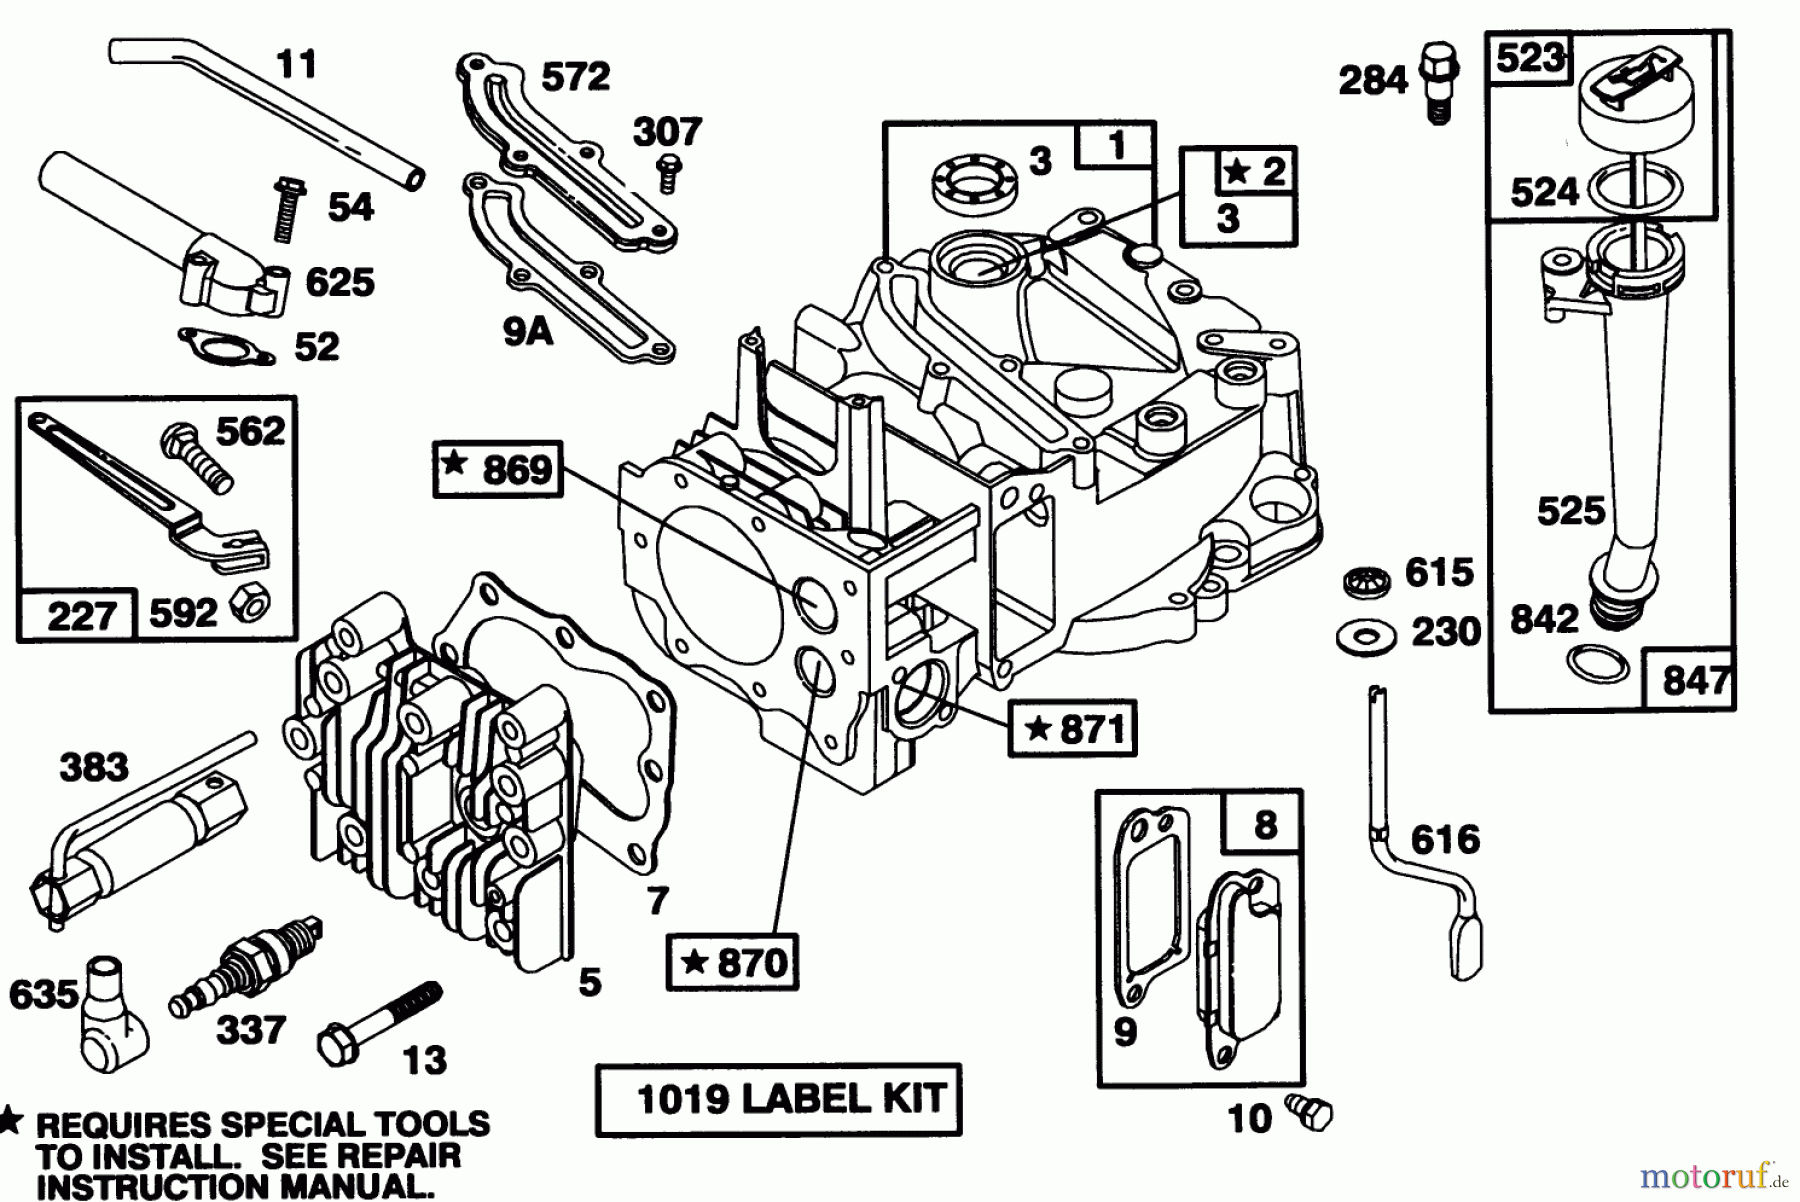  Toro Neu Mowers, Walk-Behind Seite 1 20434 - Toro Recycler II, 1993 (3900001-3999999) ENGINE BRIGGS & STRATTON MODEL 122702-3171-01 #1